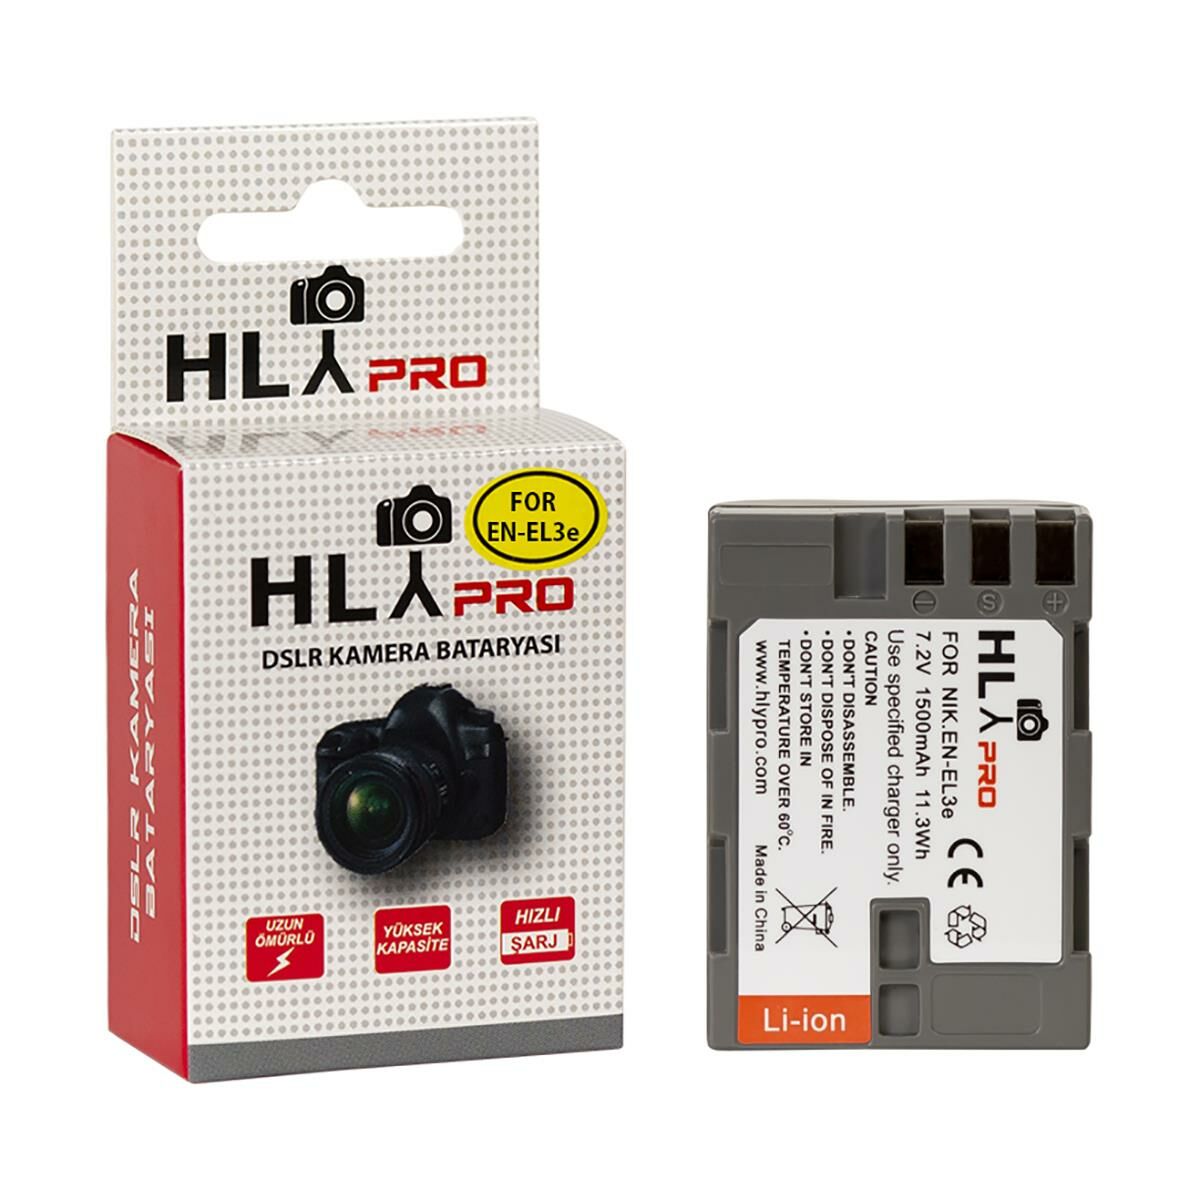 Hlypro Nikon D90 İçin EN-EL3E Batarya